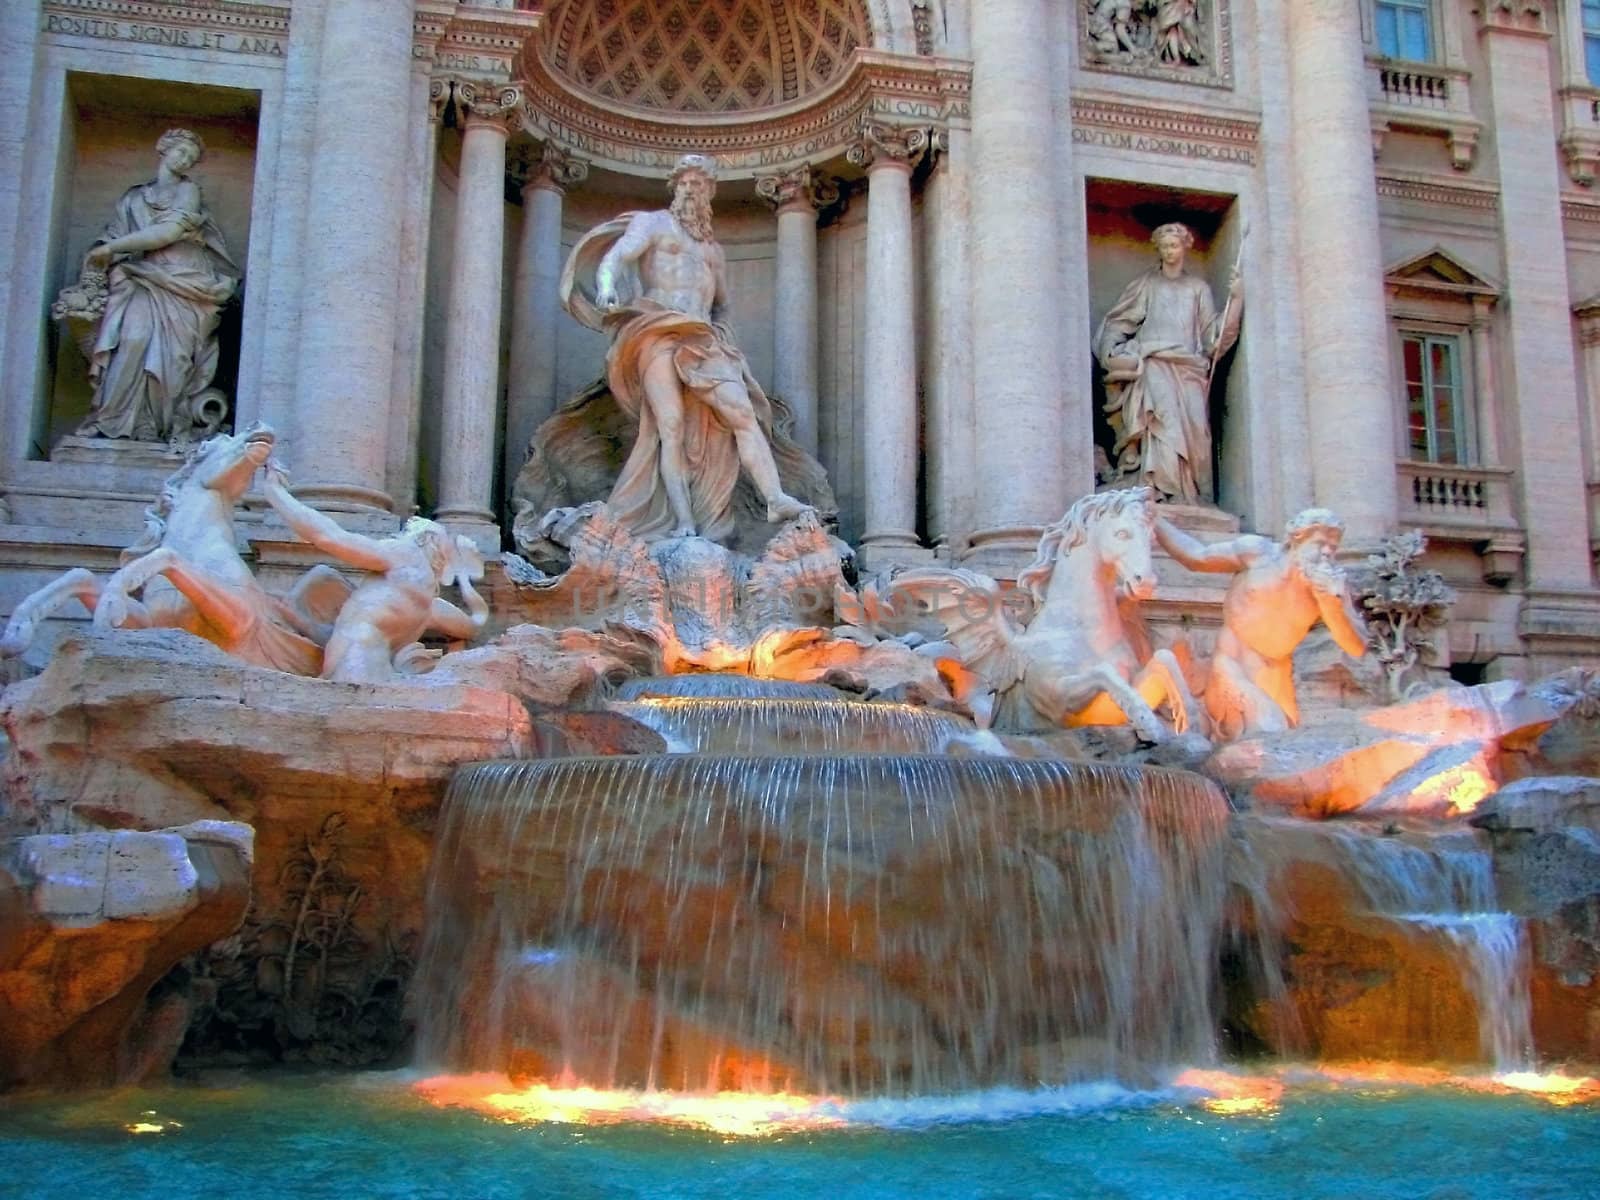 Trevi Fountain in Rome by bellafotosolo